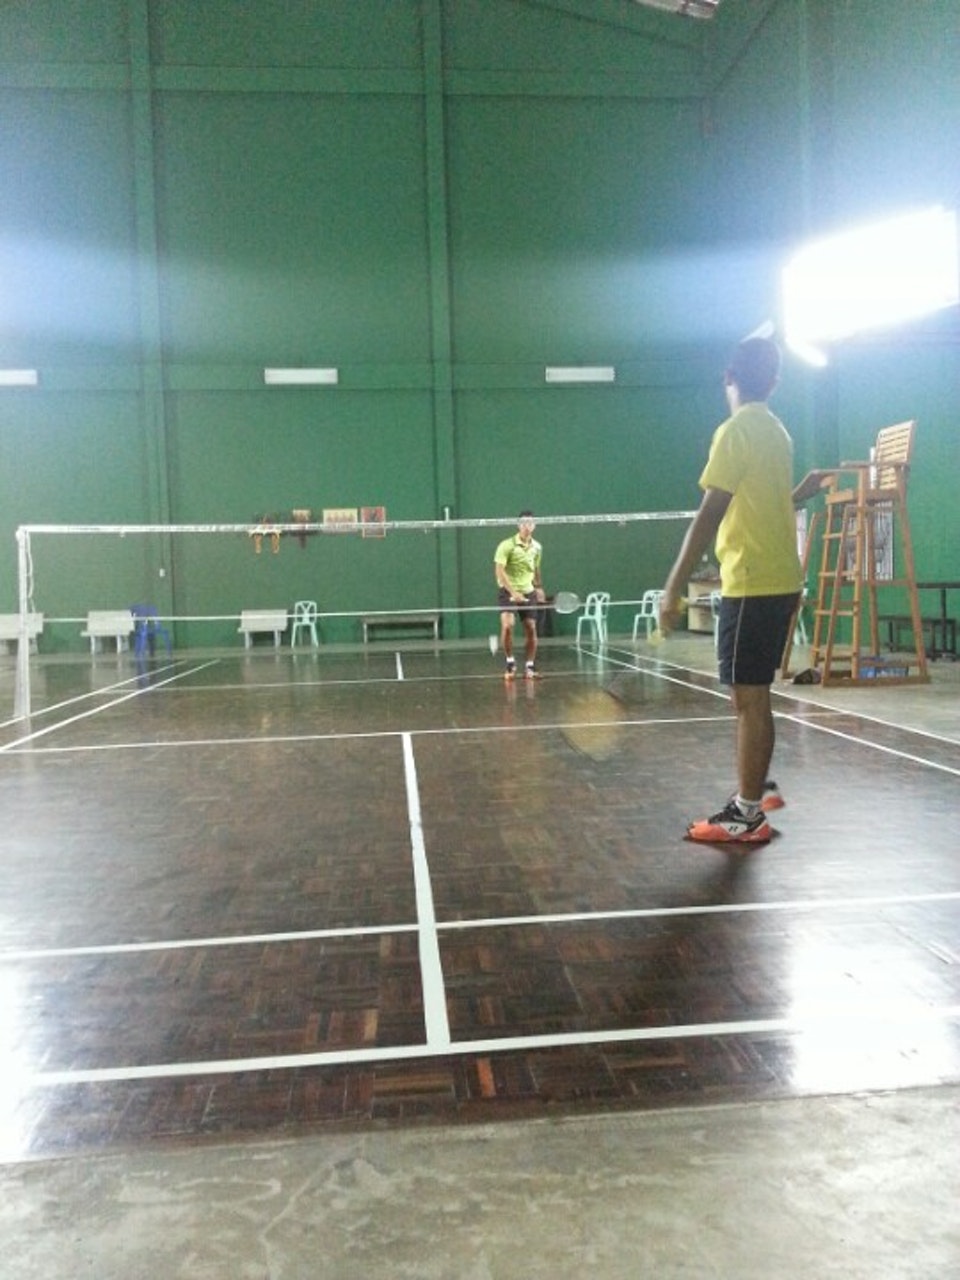 สนามแบดมินตัน - PSU Badminton Court 